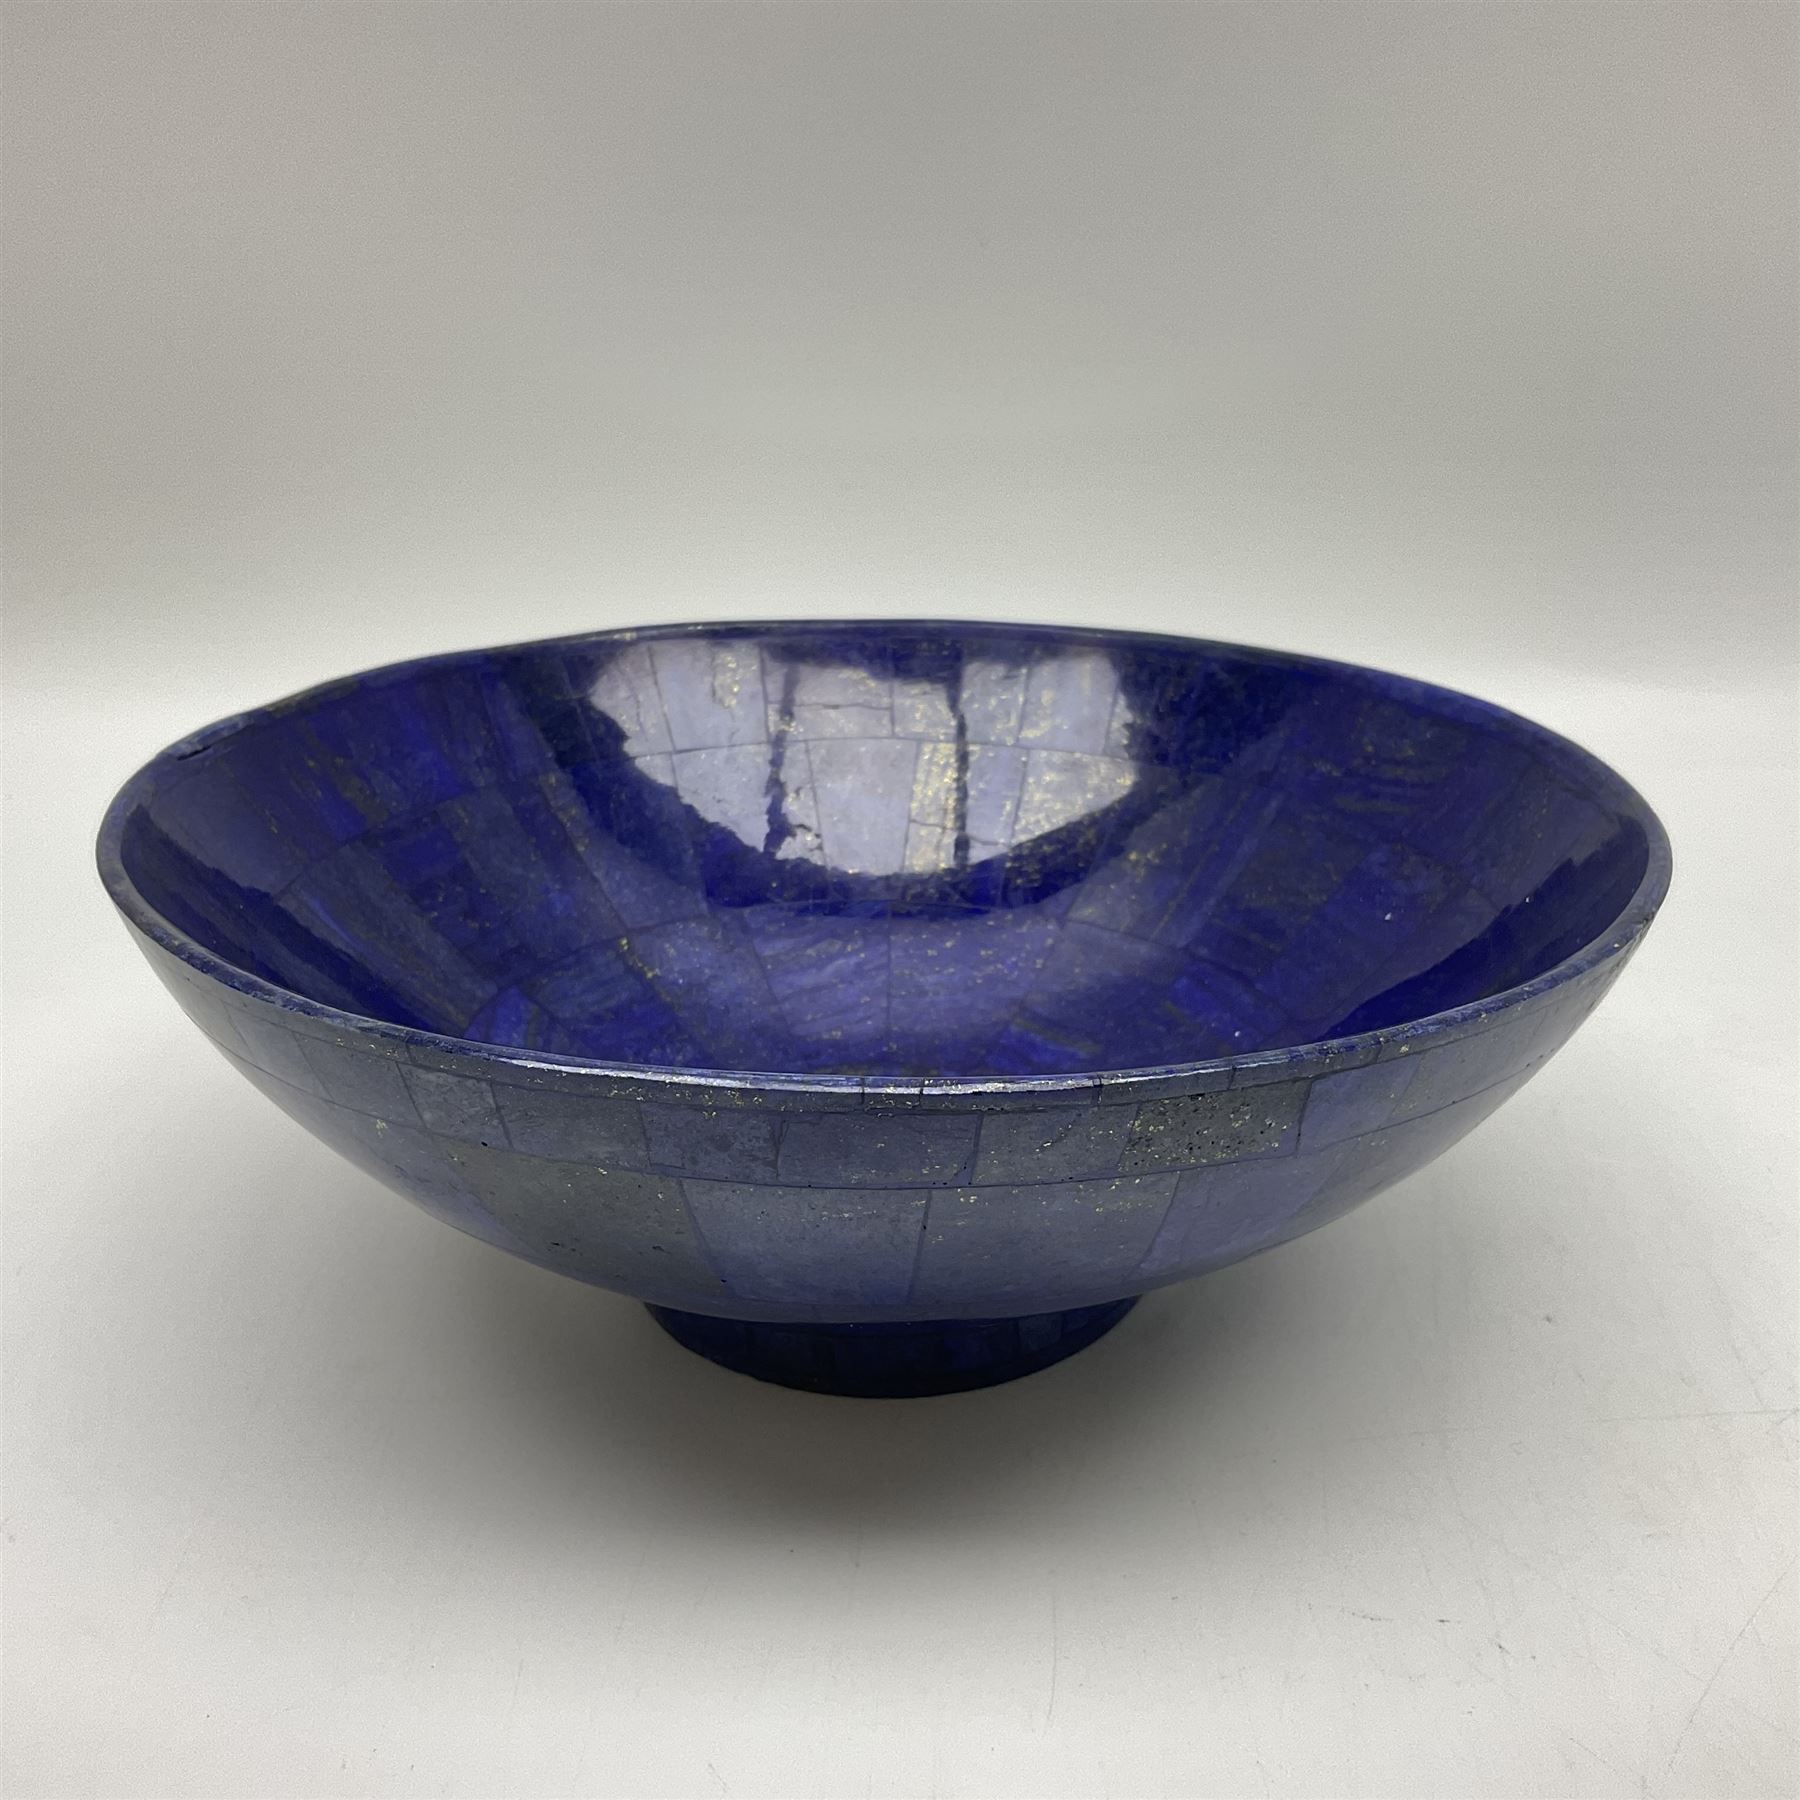 Lapis lazuli mosaic bowl - Image 2 of 7